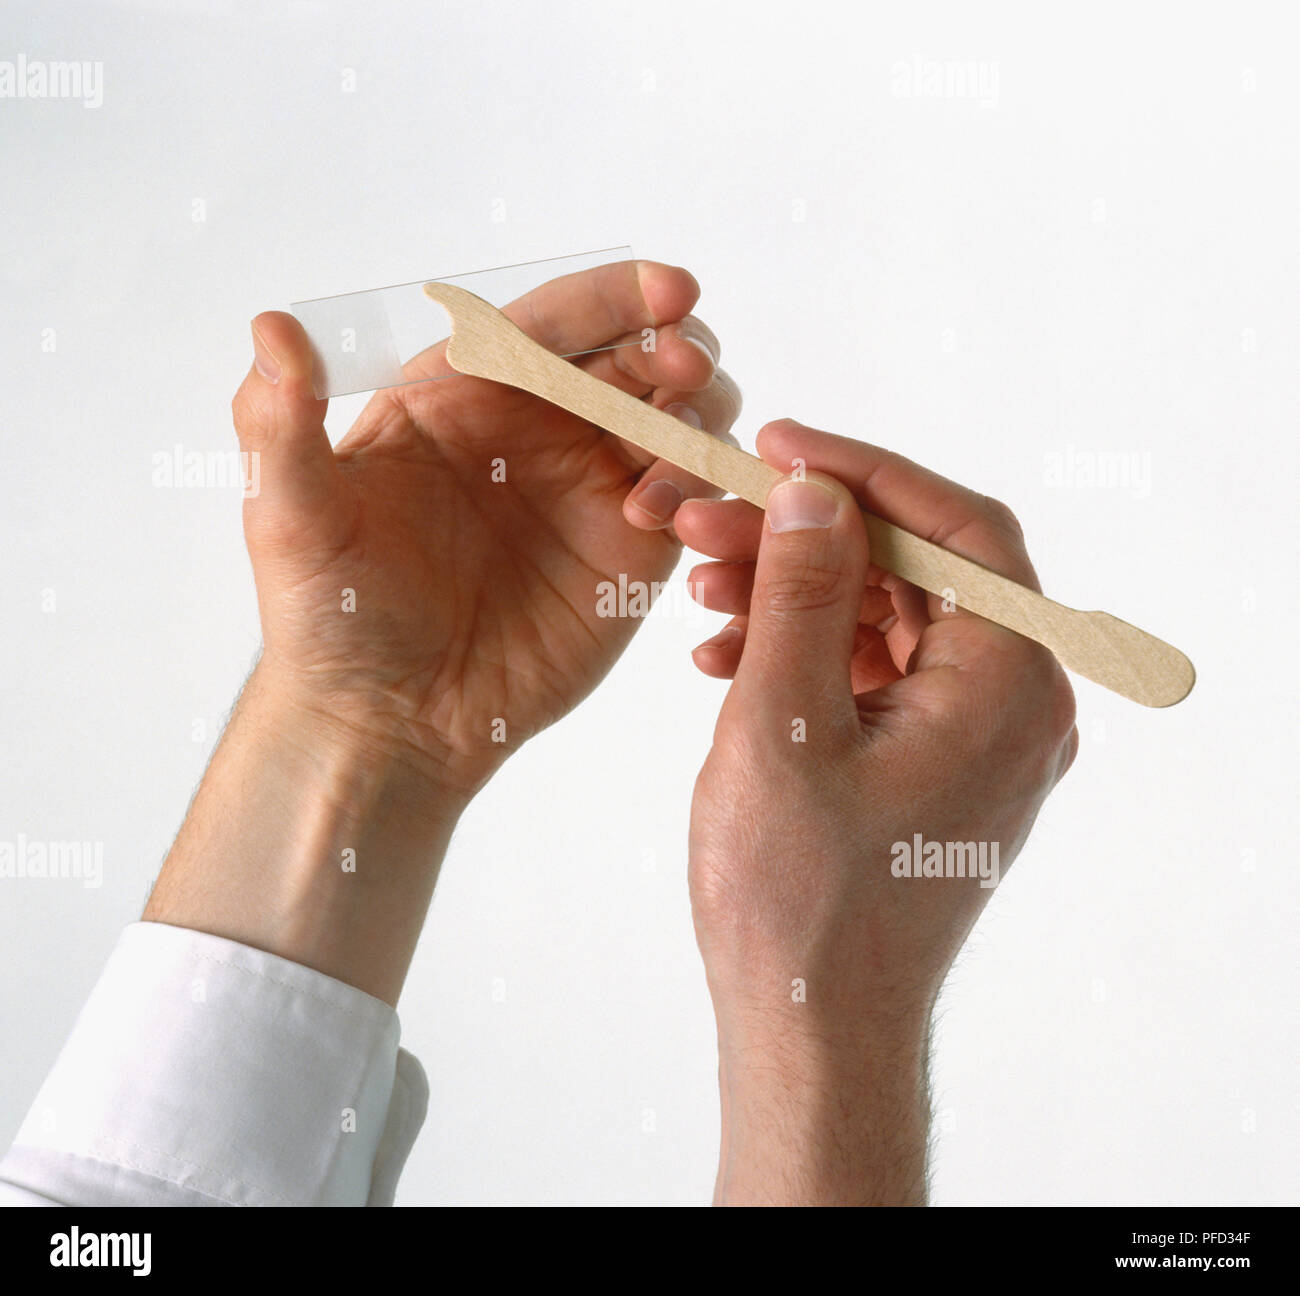 Die zervikalen Pap-abstrich, Spachtel und Glas probe Folie durch ein Paar  Händen gehalten Stockfotografie - Alamy